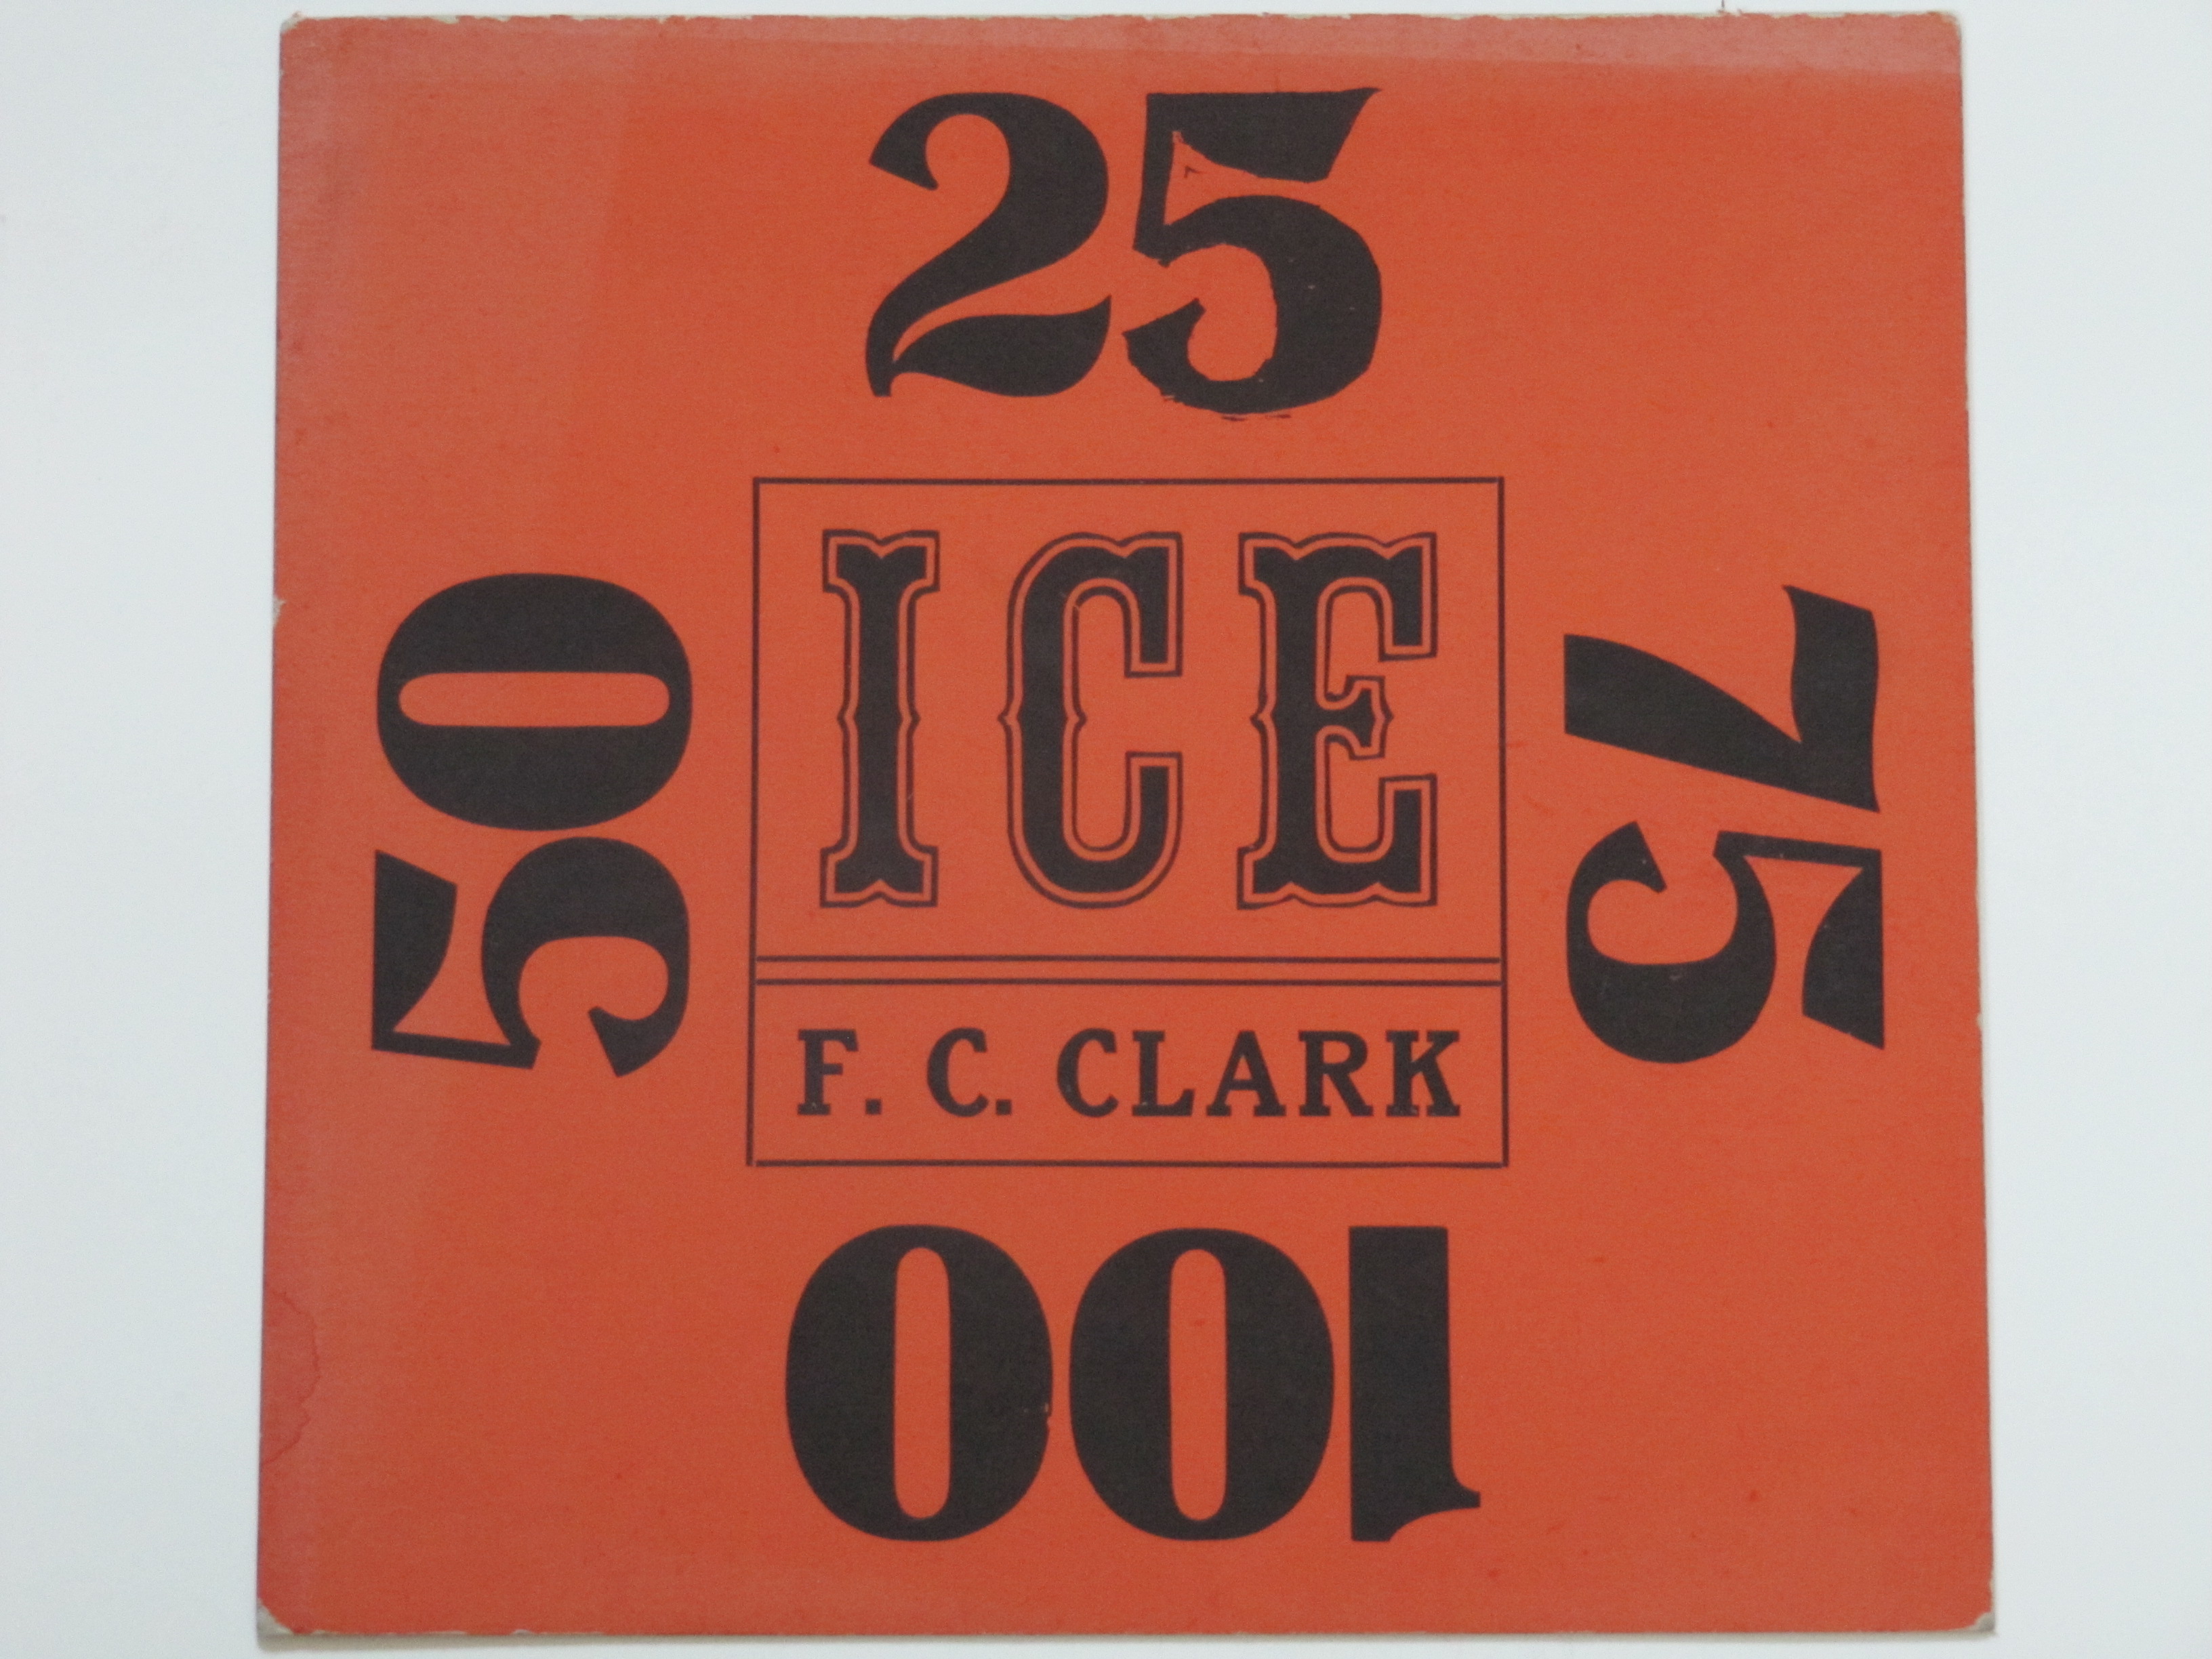 F.C.Clark Ice Co.